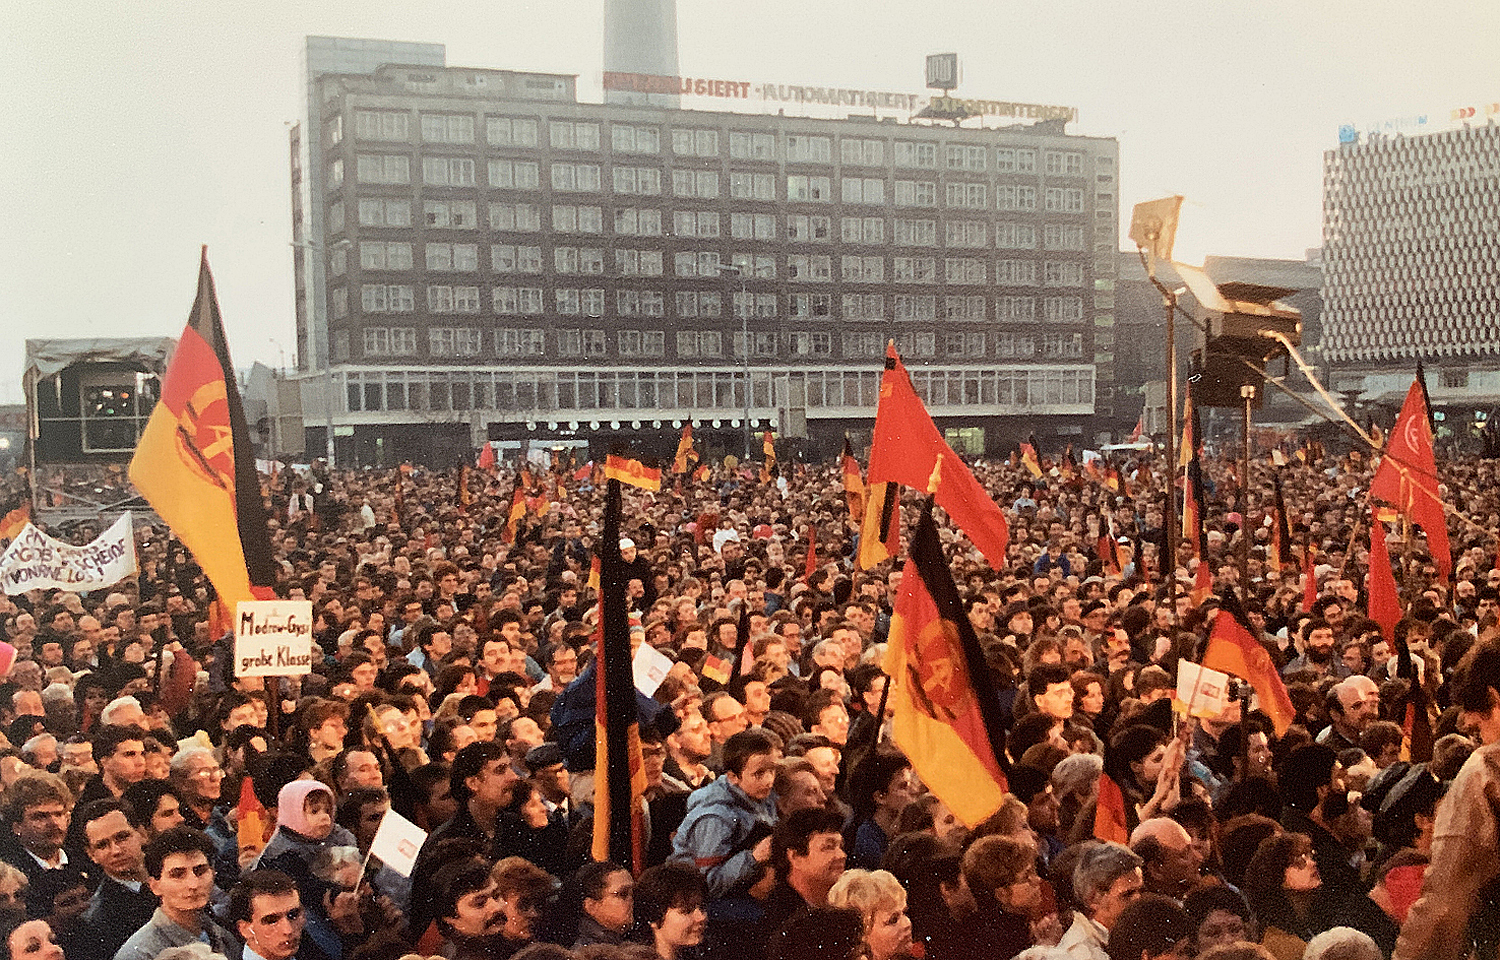 Μεγάλες αντικυβερνητικές διαδηλώσεις έγιναν στο κέντρο του Βερολίνου εκείνο το διάστημα με κορυφαία εκείνη στις 4 Νοεμβρίου στην Αλεξάντερ Πλατς.